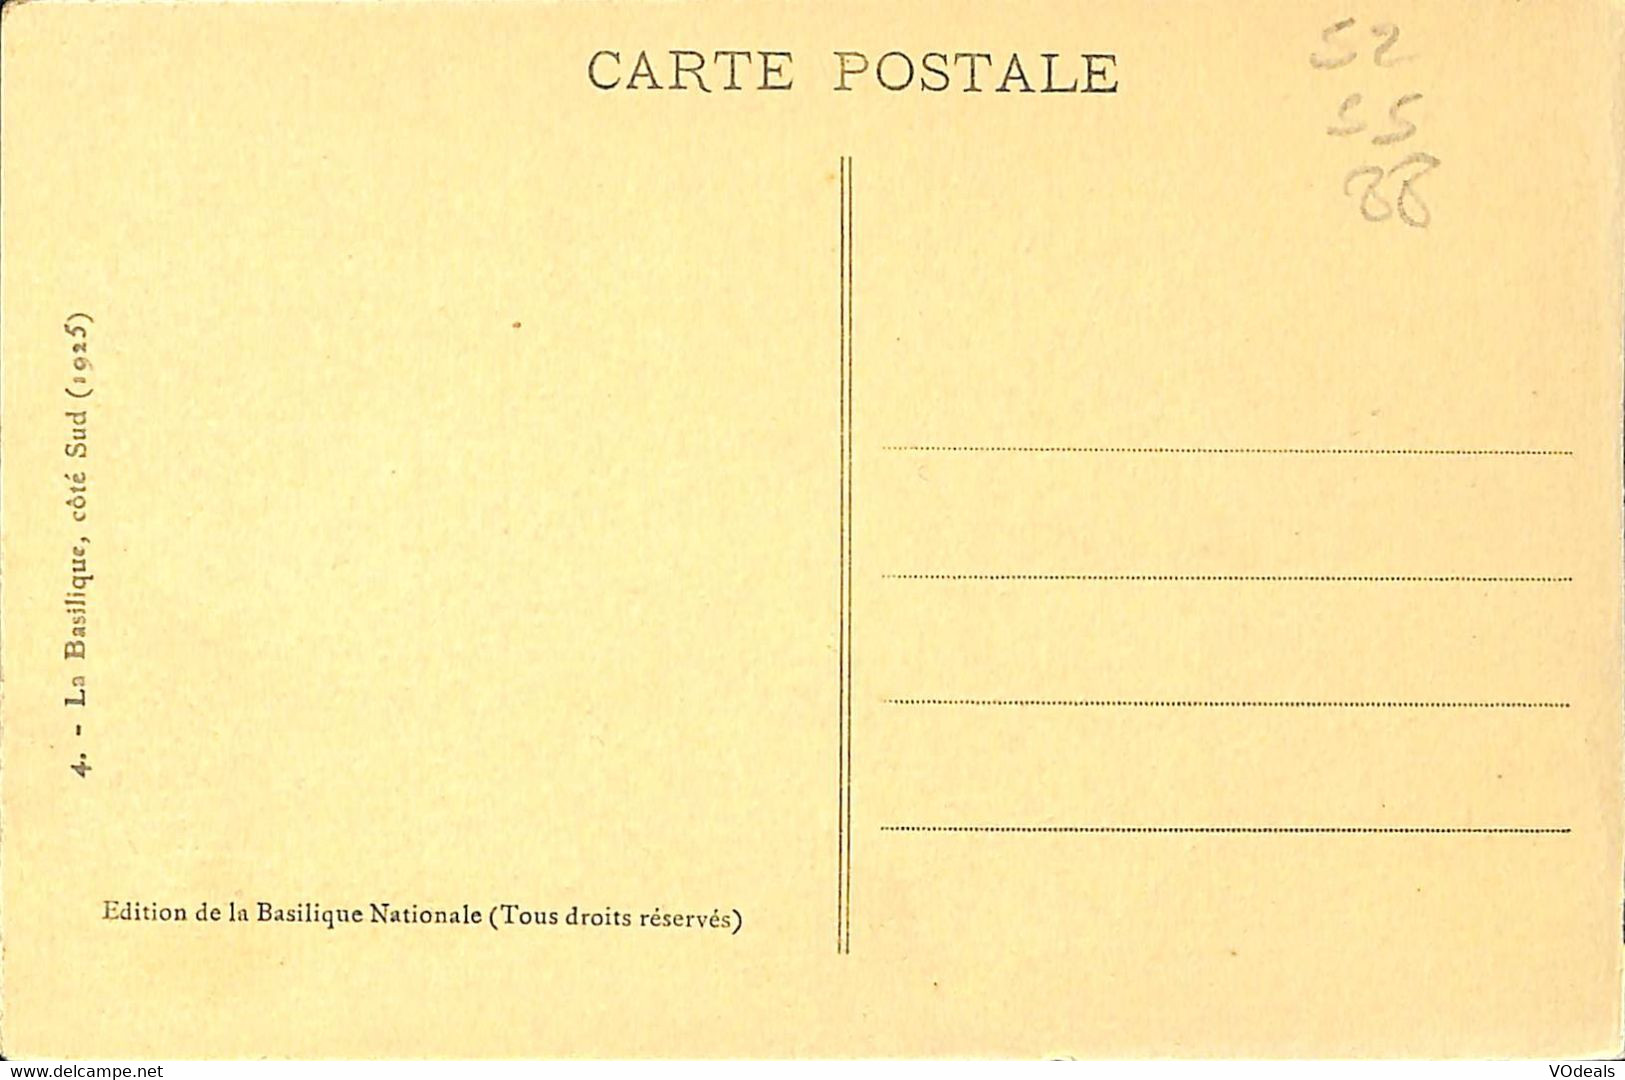 032 539 - CPA - France - Eglise - lot de 5 cartes différentes